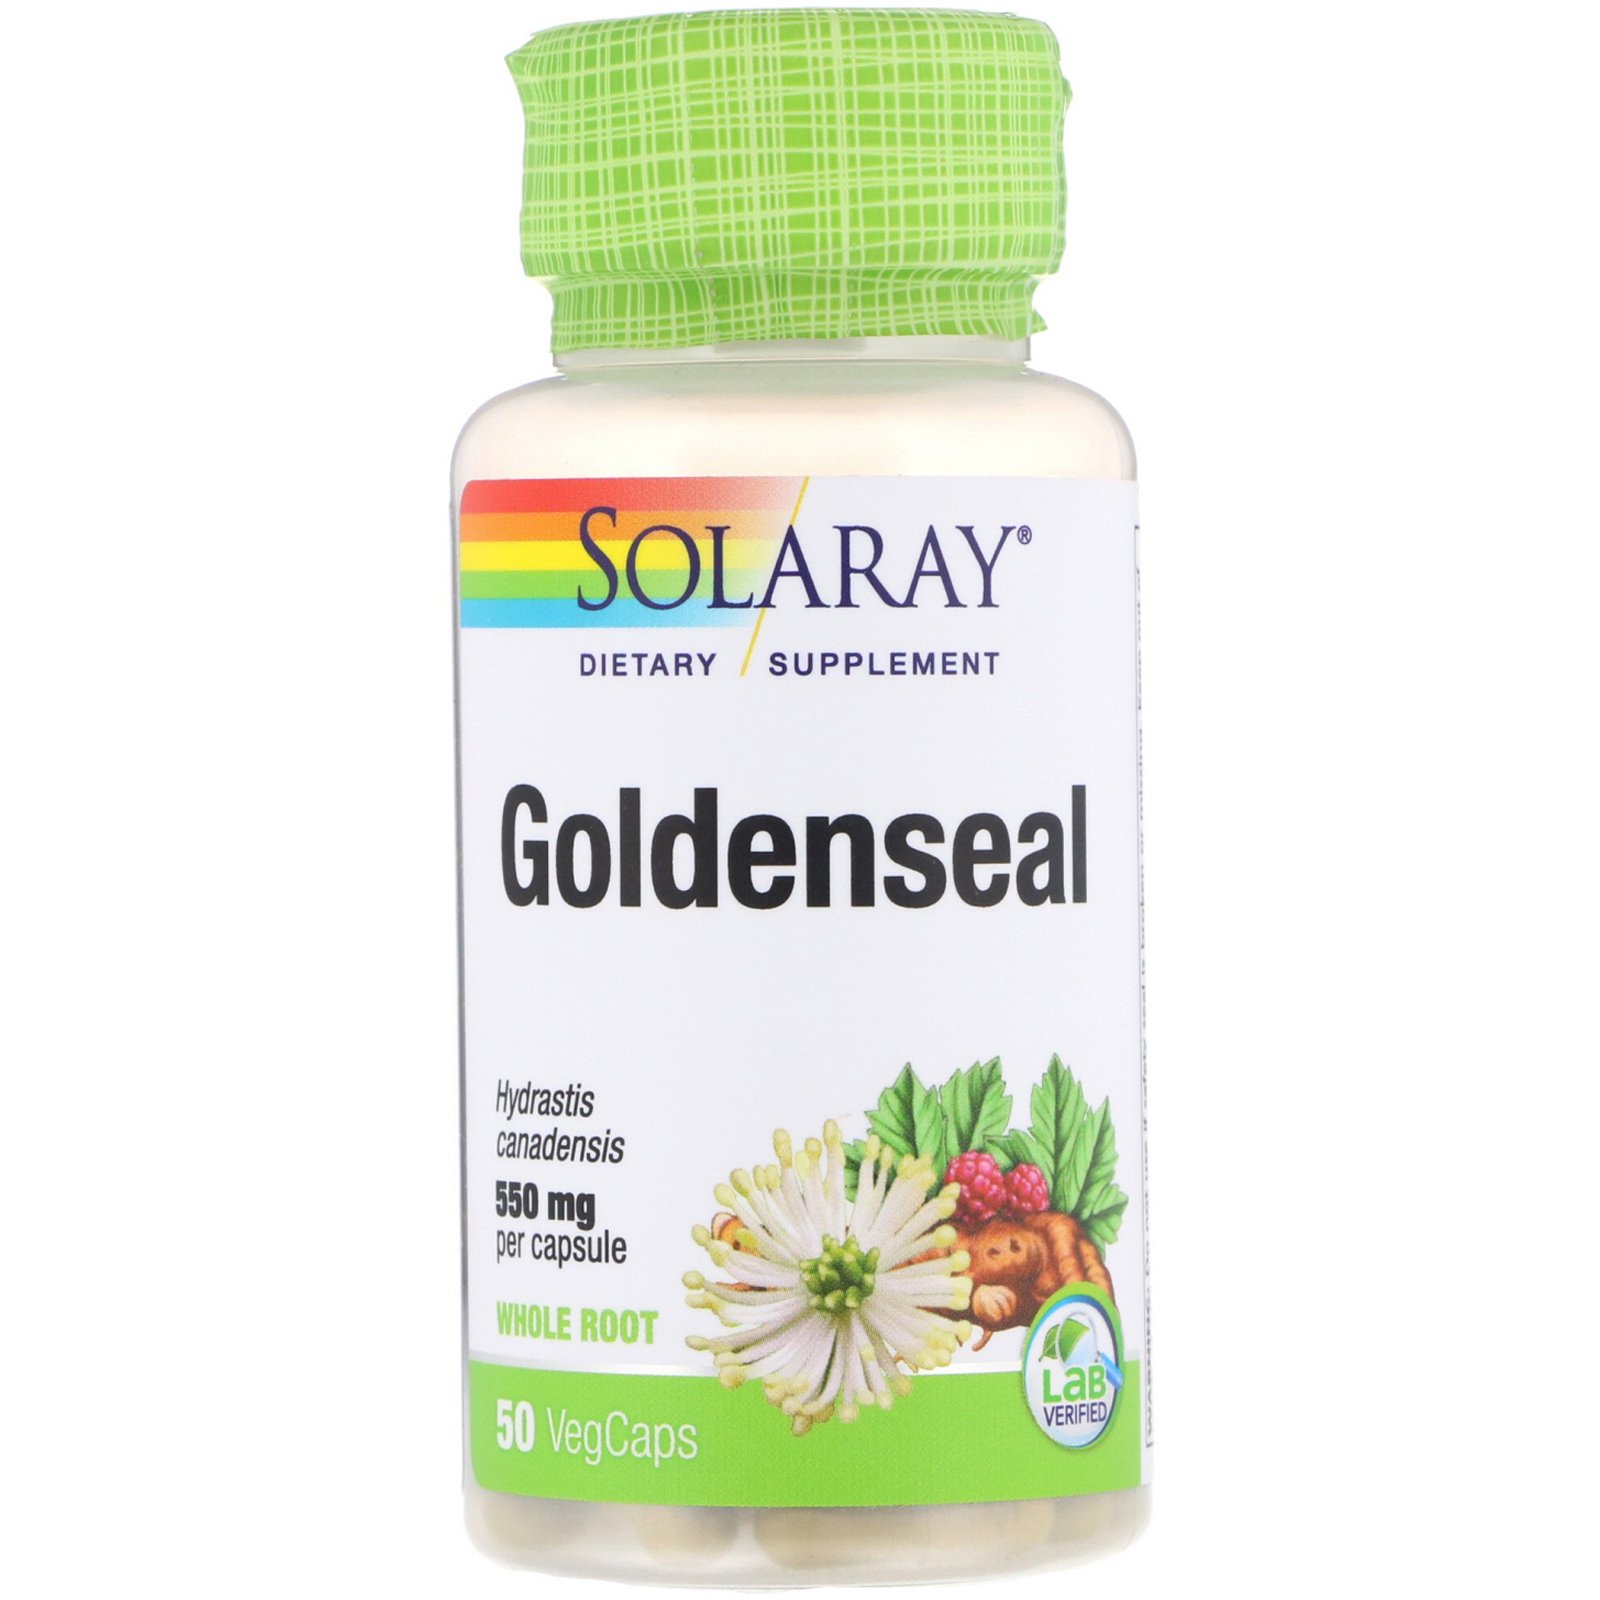 Benefits of Golden Seal Supplements